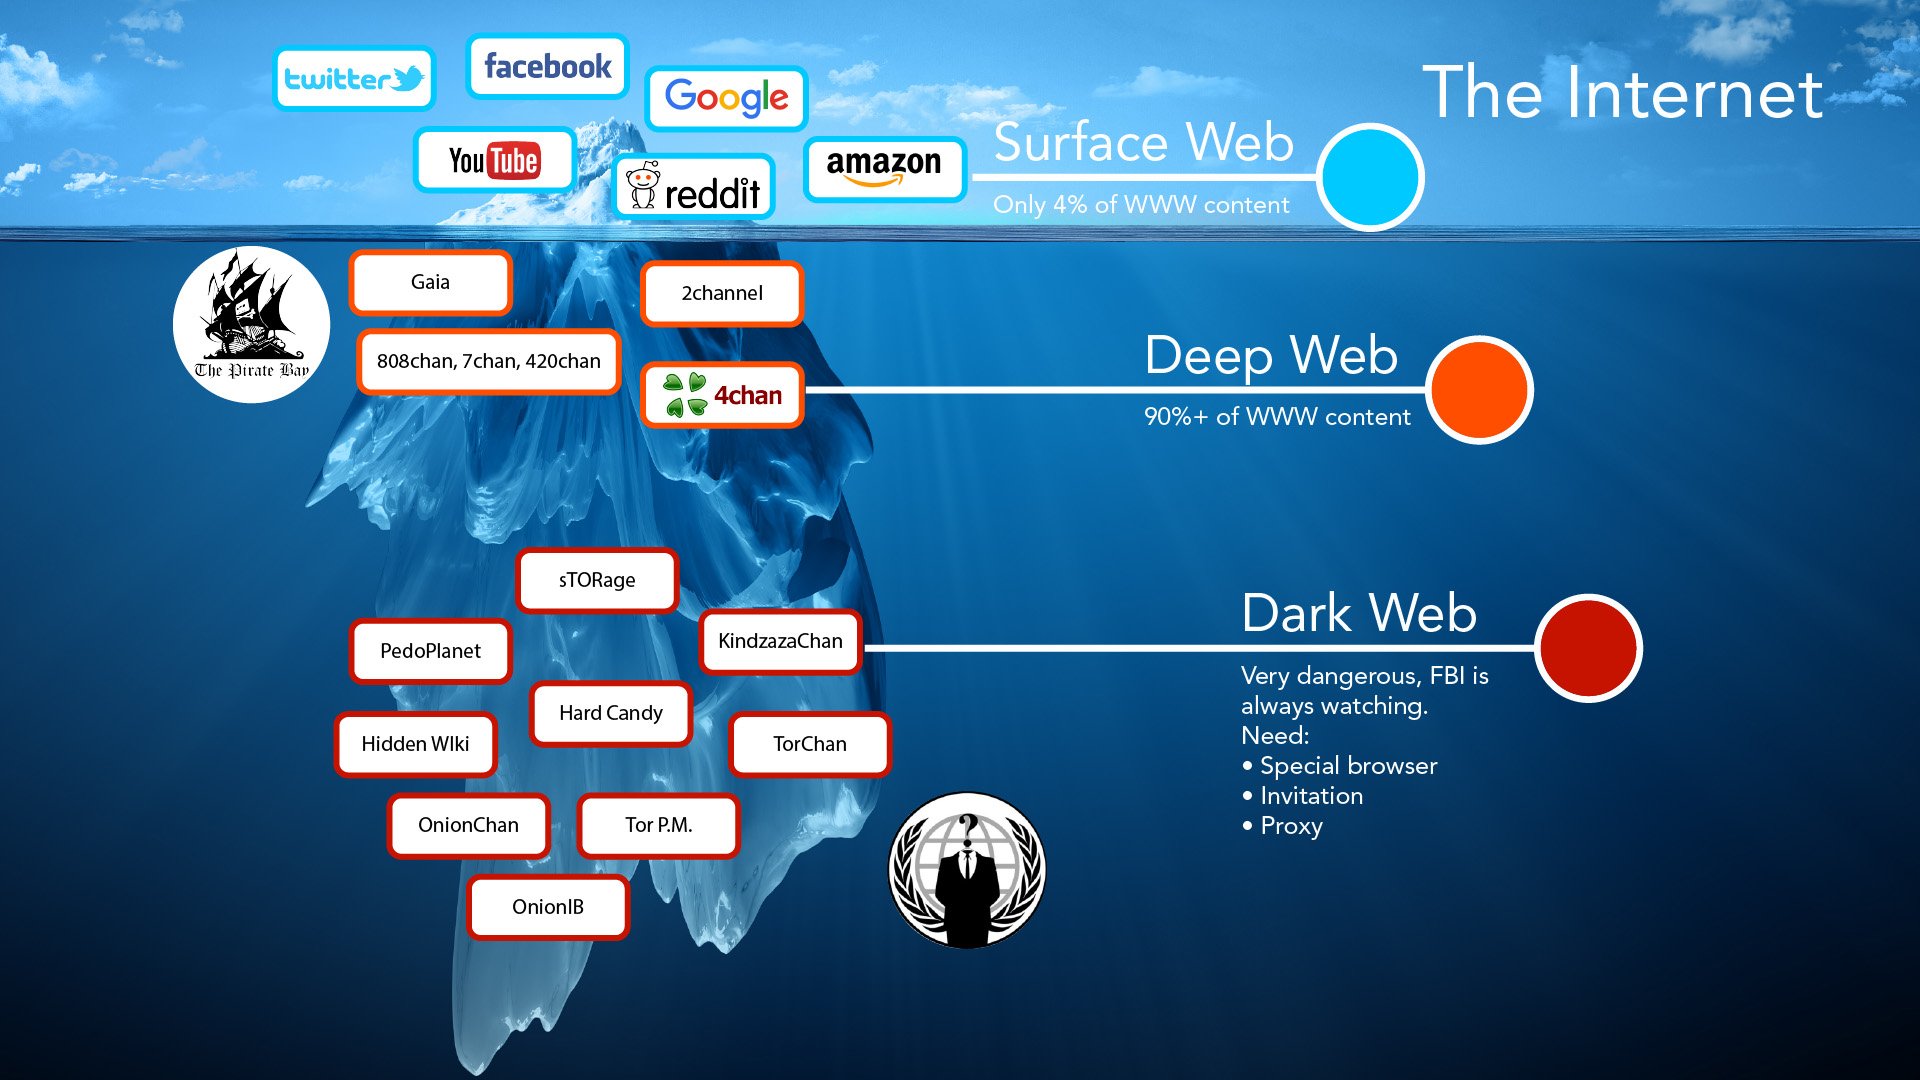 Asap Darknet Market